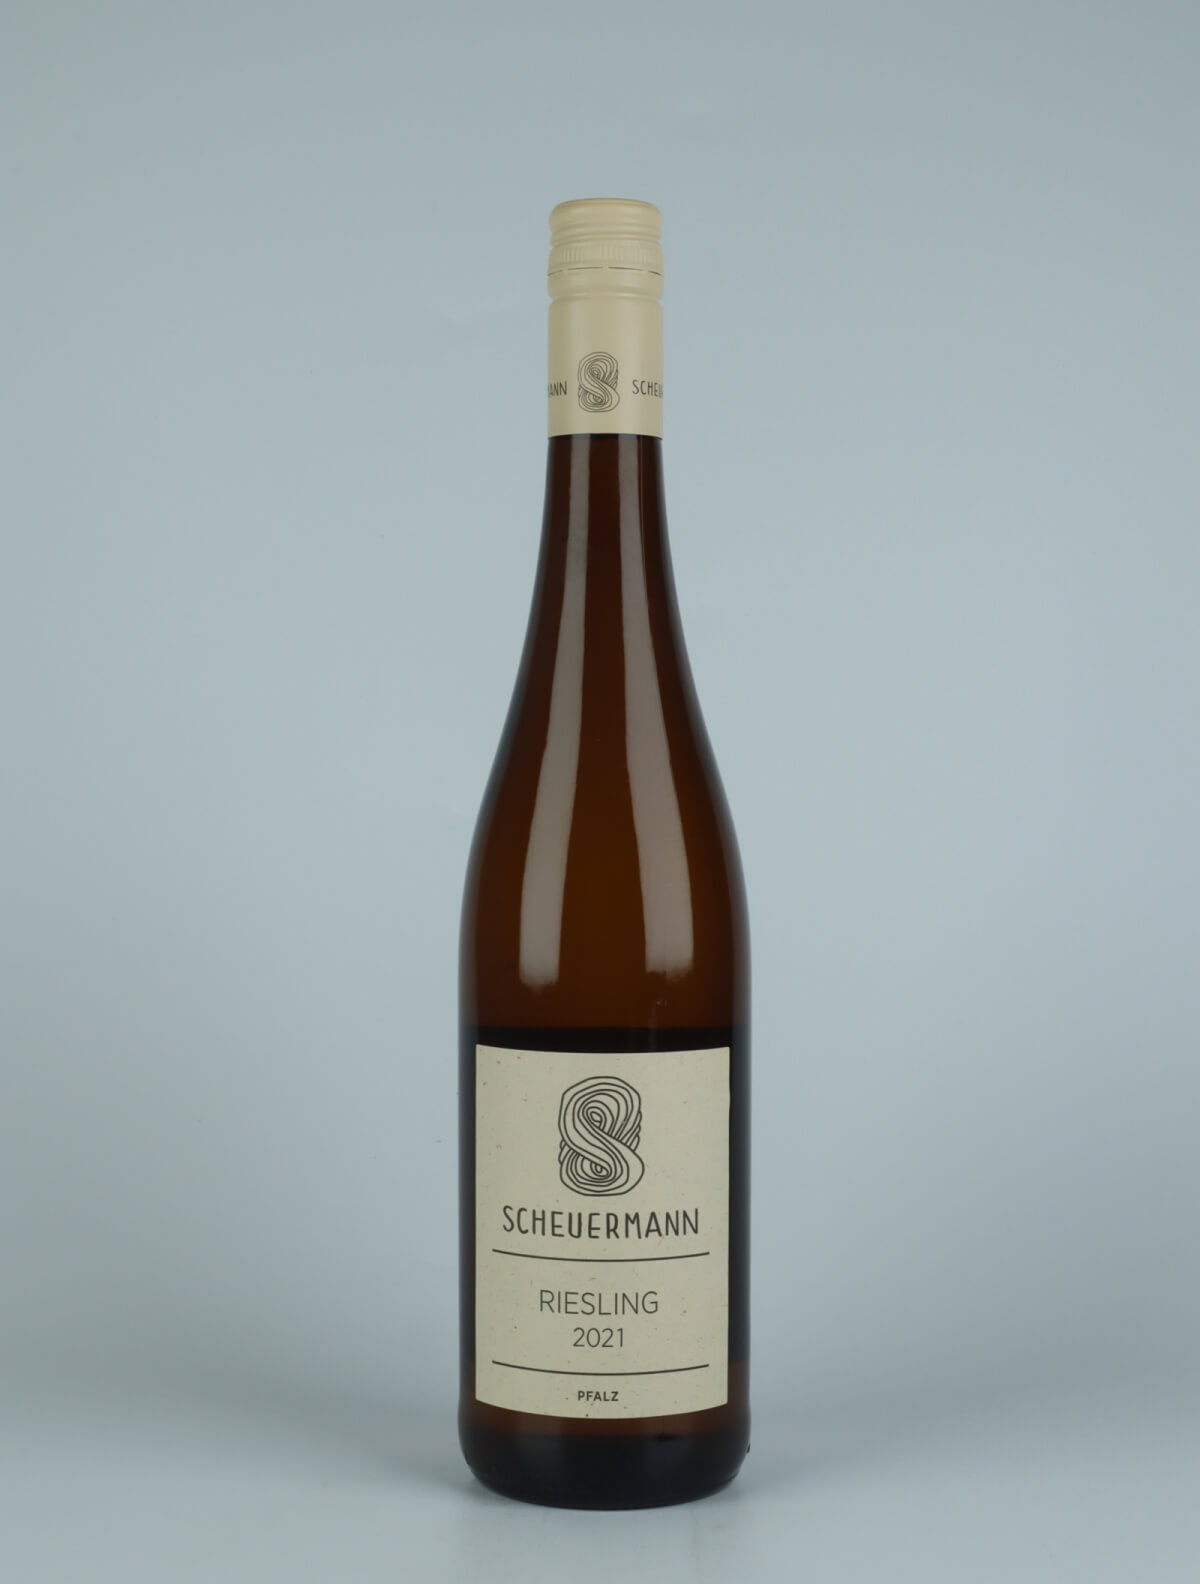 A bottle 2021 Riesling Trocken White wine from Weingut Scheuermann, Pfalz in Germany